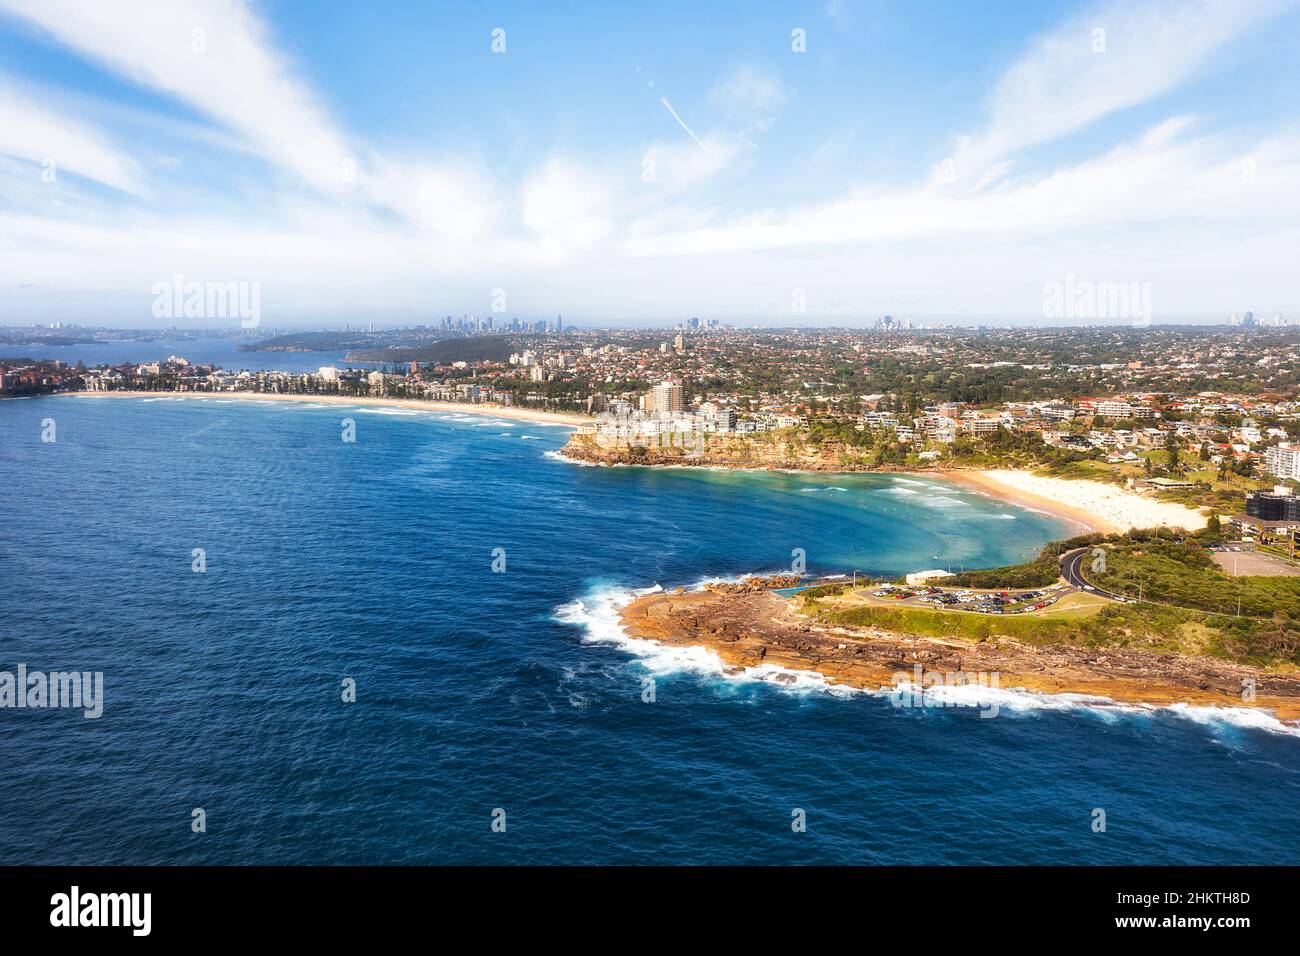 Plages de Manly et d'eau douce sur la côte des plages du Nord de Sydney - vue aérienne vers le port et le quartier des affaires. Banque D'Images